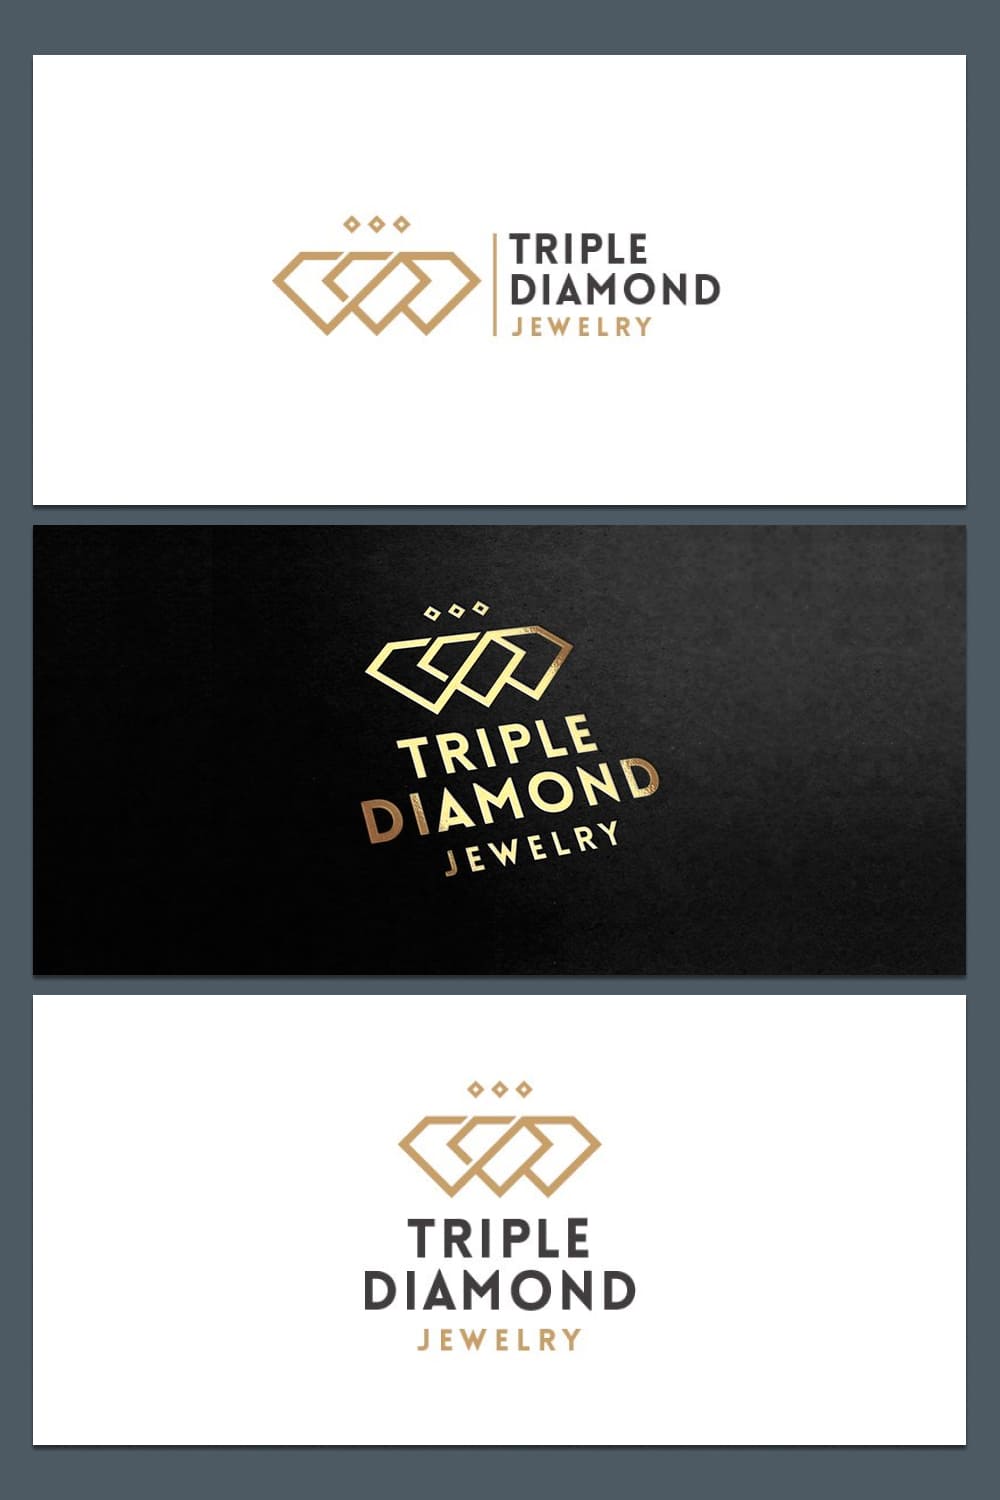 triple diamond jewelry logo for jewelry brand.